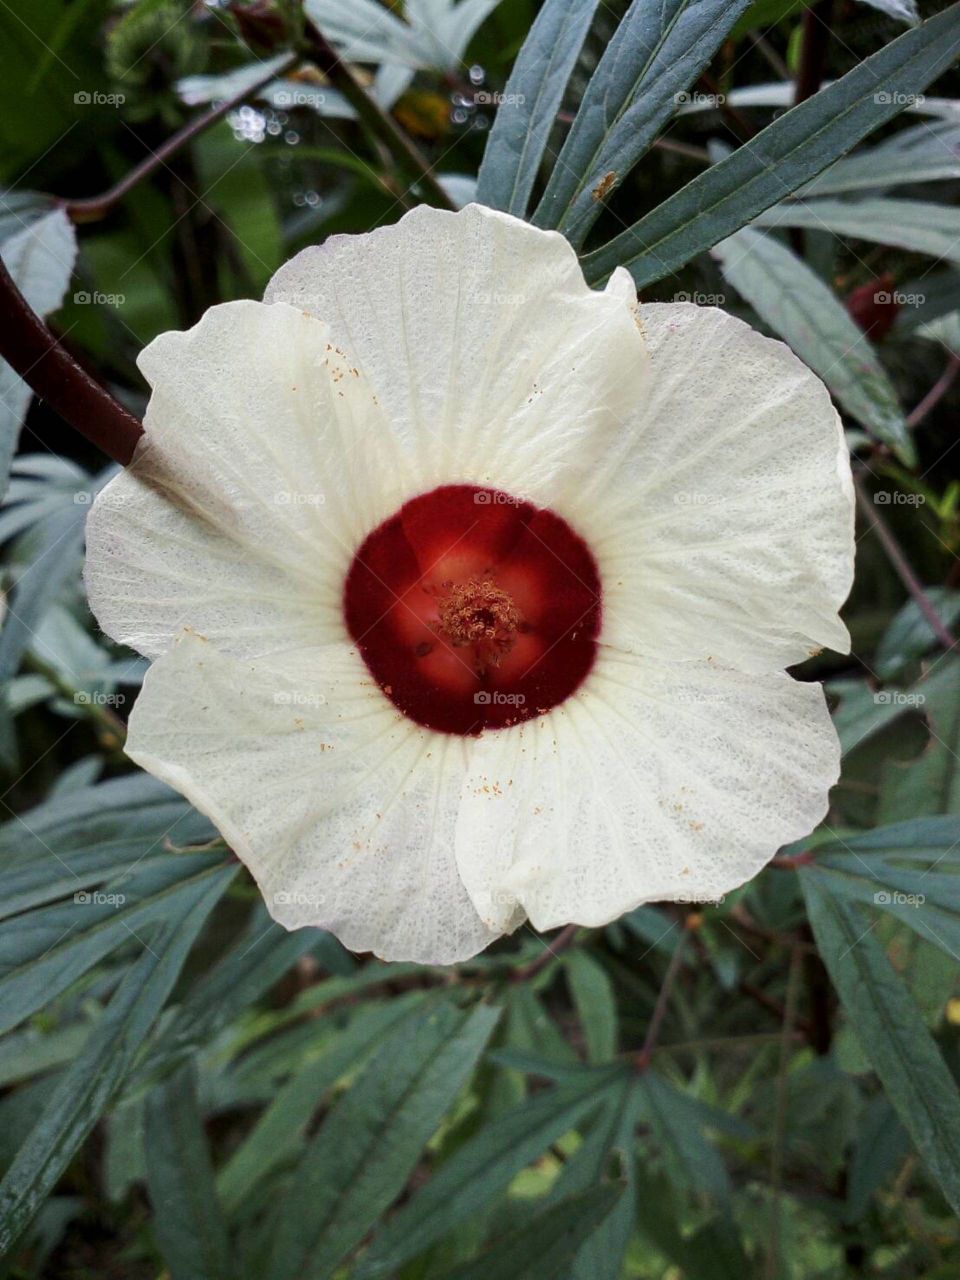 The white flower 